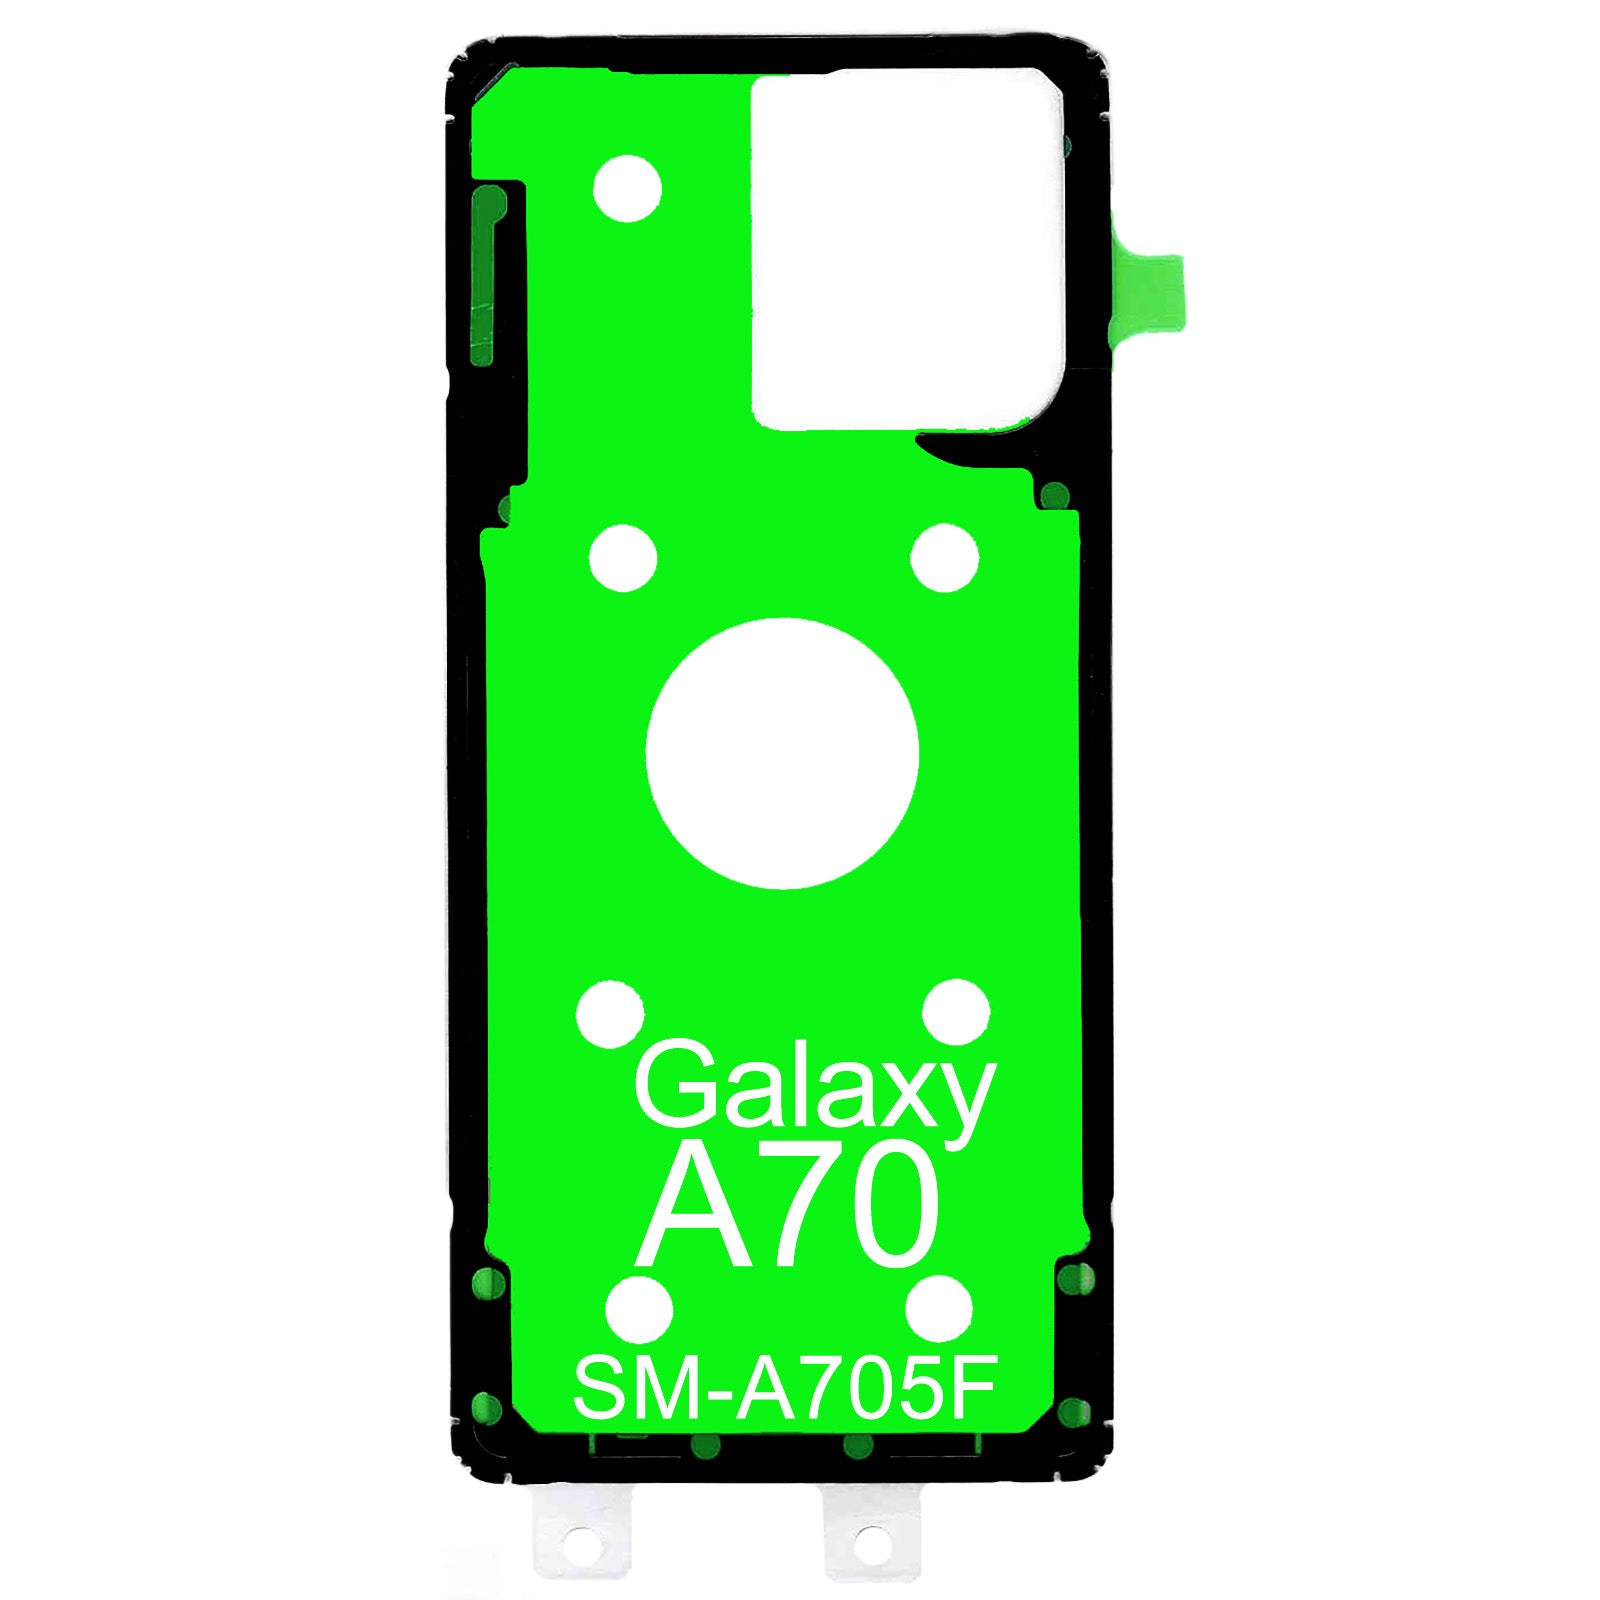 Kaufen Sie jetzt bei Dinngs.de einen hochwertigen EB-BA705ABU Ersatzakku für Ihr Samsung Galaxy A70. Kompatibel mit SM-A705F 